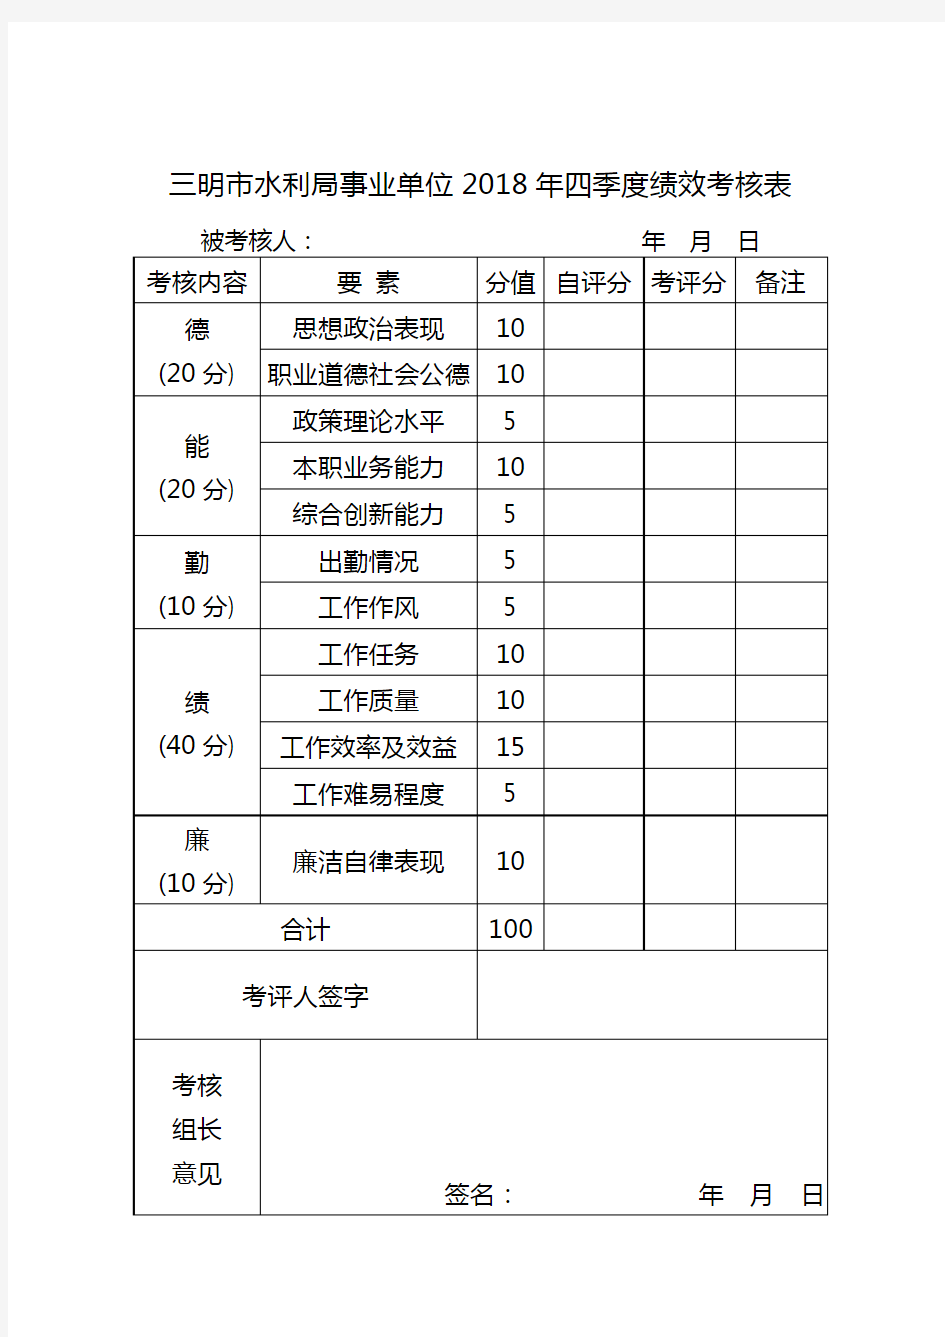 三明市水利局事业单位2018年四季度绩效考核表